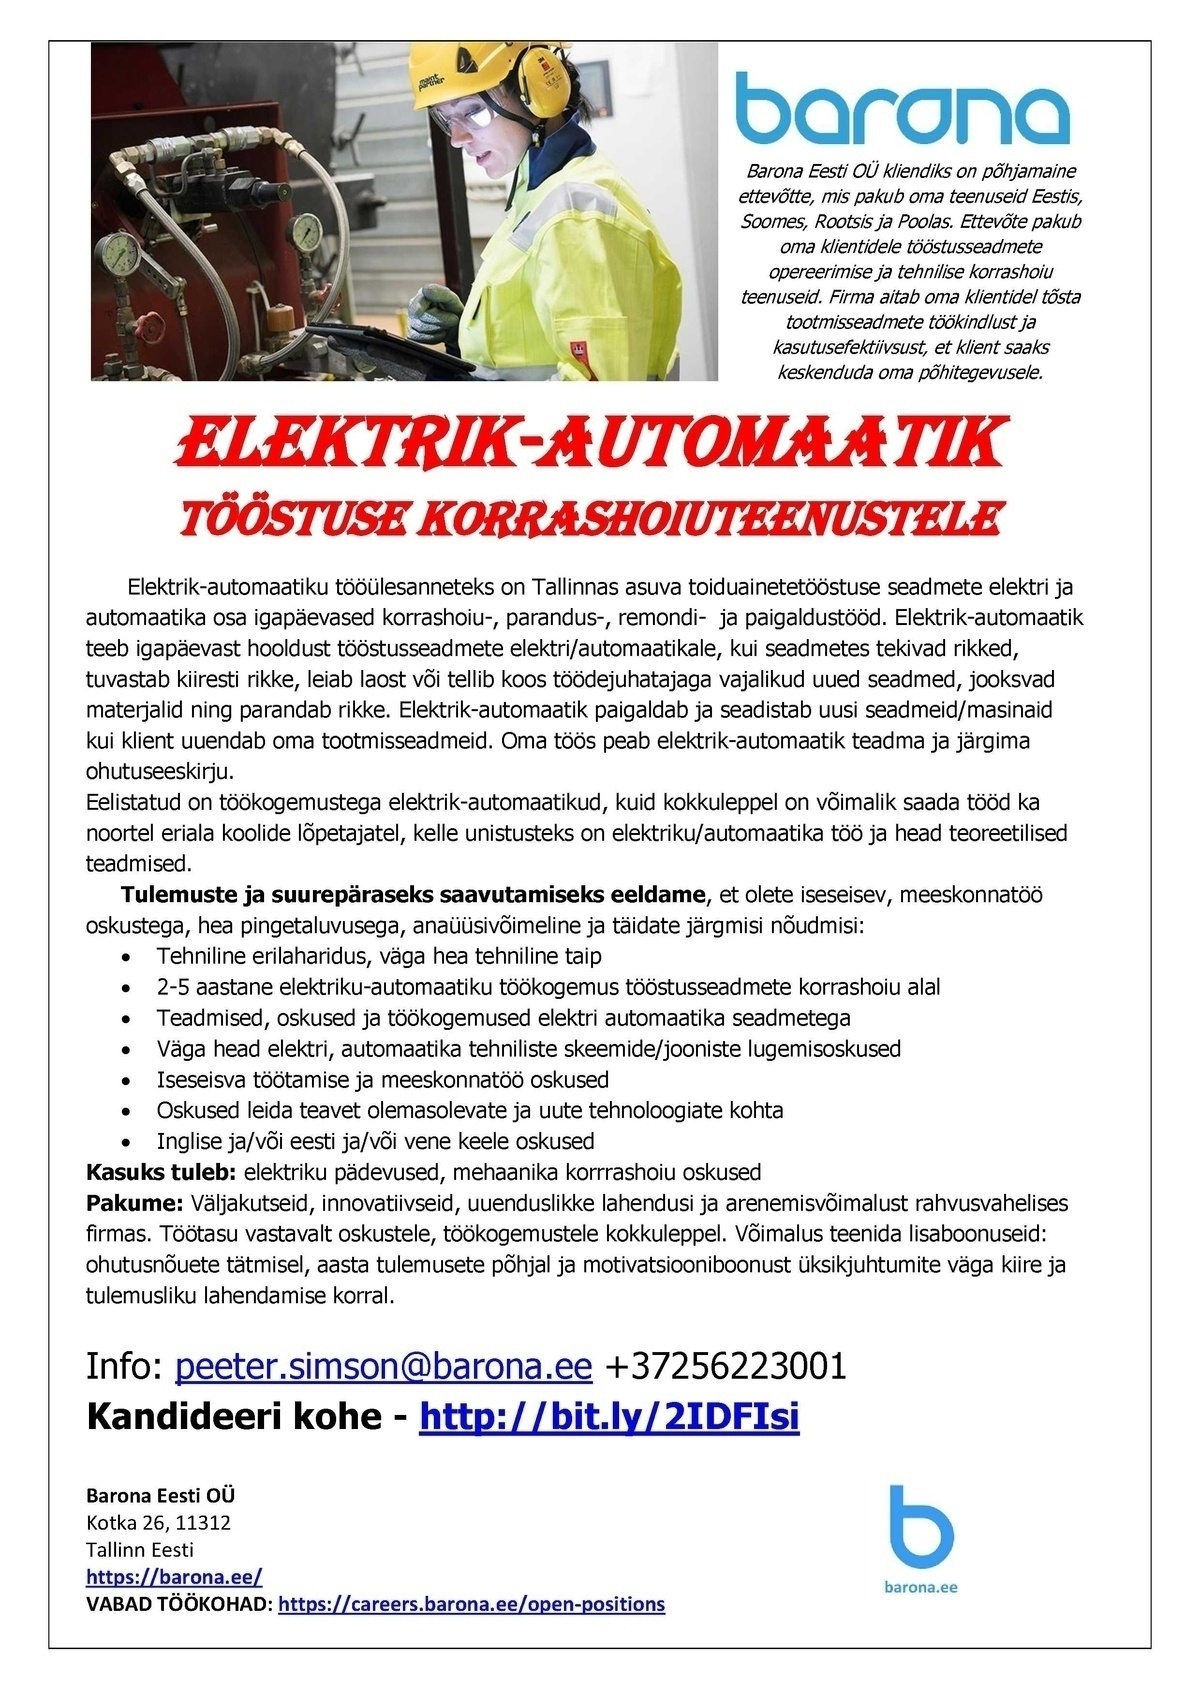 Barona Eesti OÜ Elektrik-automaatik tööstuse korrashoiuteenustele